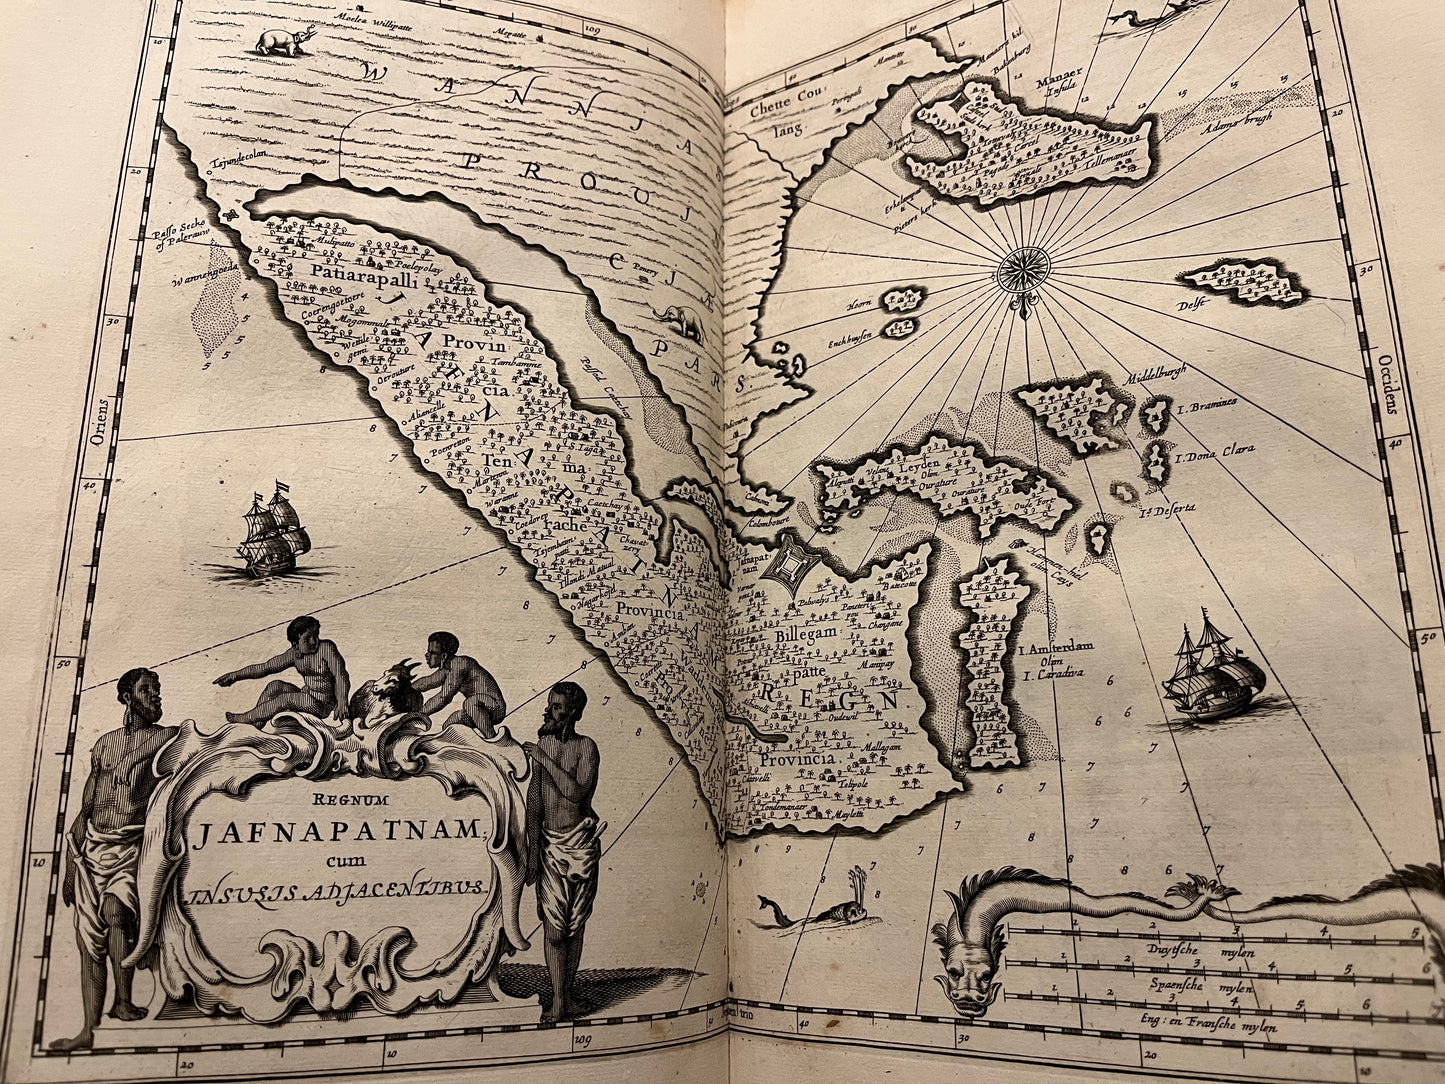 Sri Lanka and India, Baldeus, 1672, Naauwkeurige beschryvinge van Malabar en Coromandel AND Beschryving van het machtige eyland Ceylon.